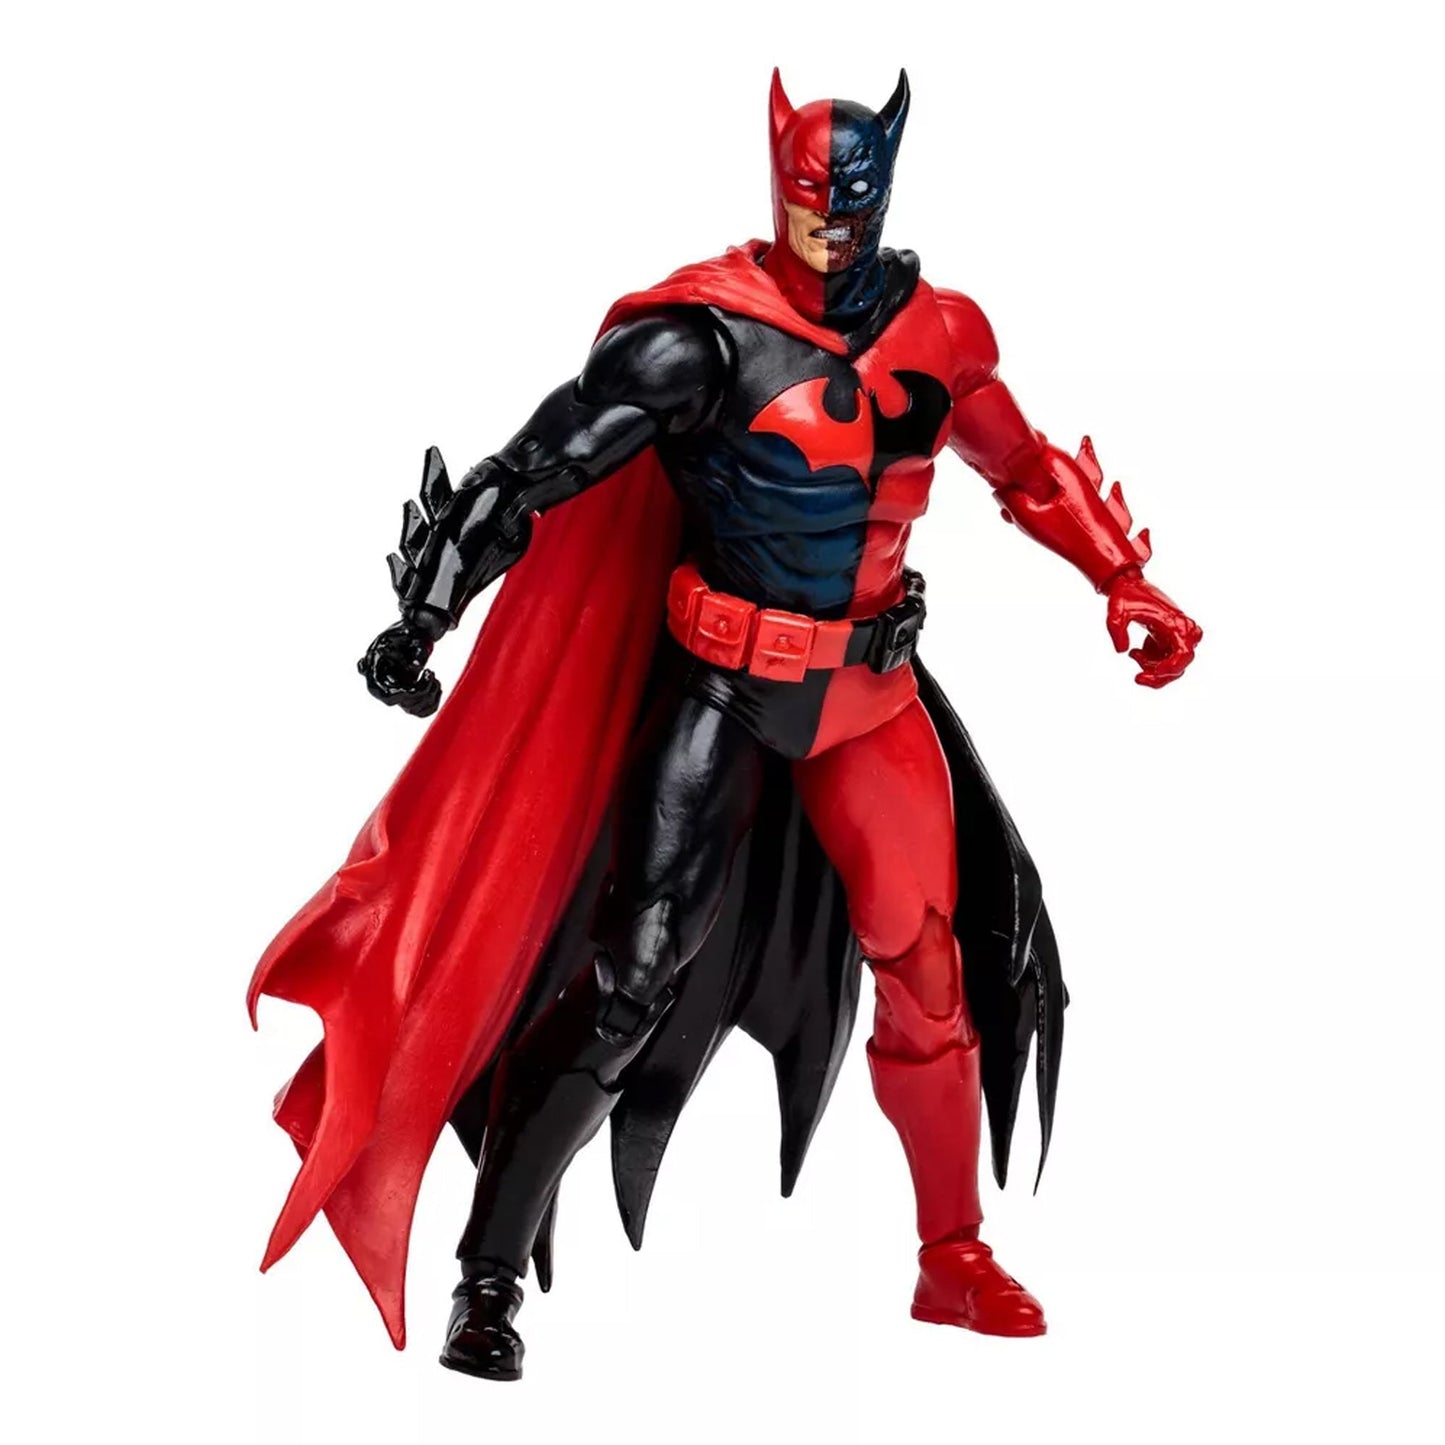 DC Multiverse Two-Face as Batman ABANDONADO